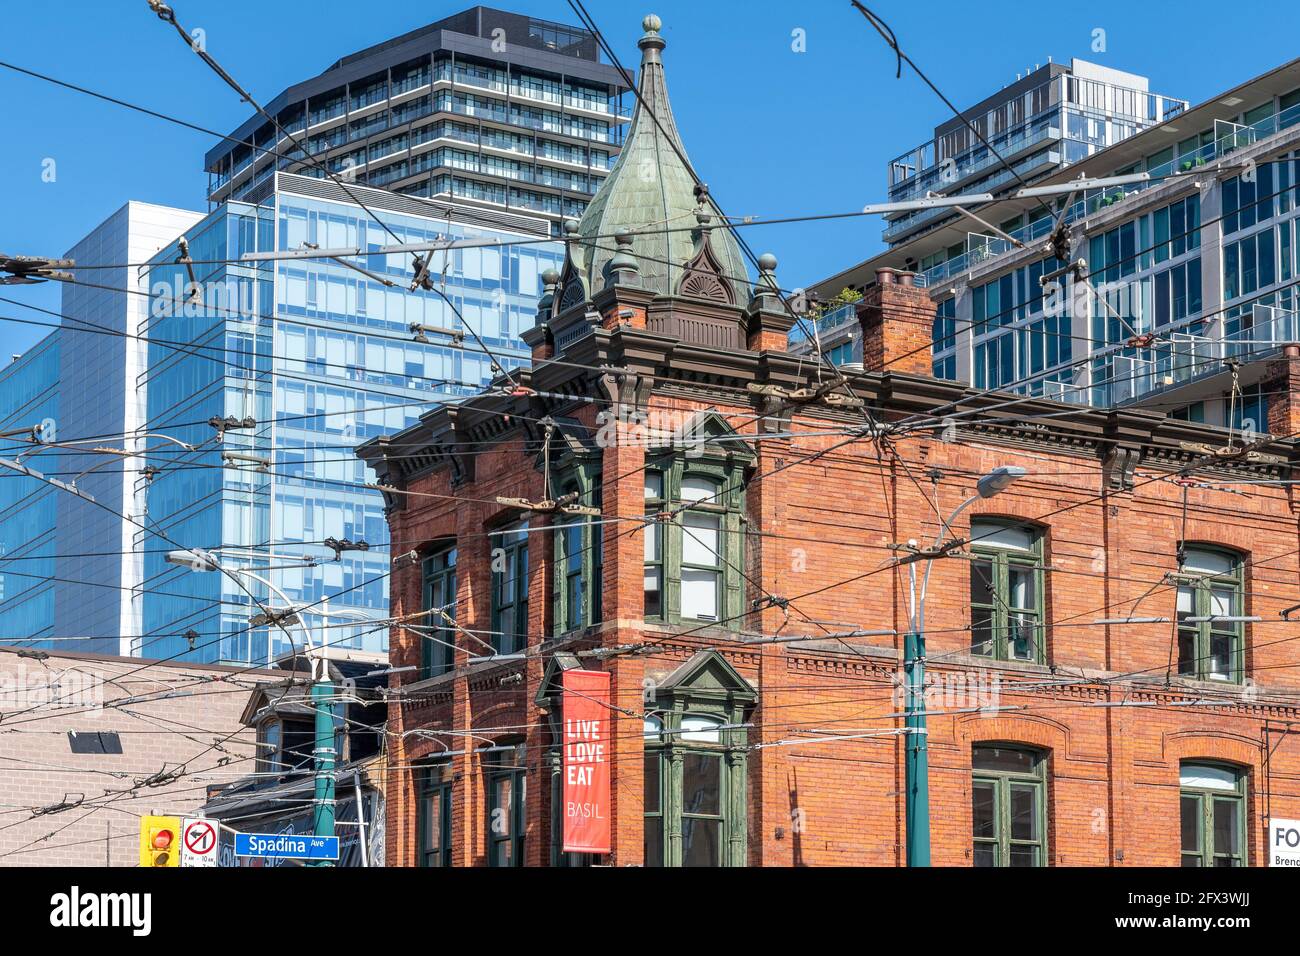 Édifice colonial patrimonial situé à l'angle de la rue Spadina et de la rue Queen Ouest, dans le quartier du centre-ville de Toronto, au Canada. Architecture urbaine suite Banque D'Images